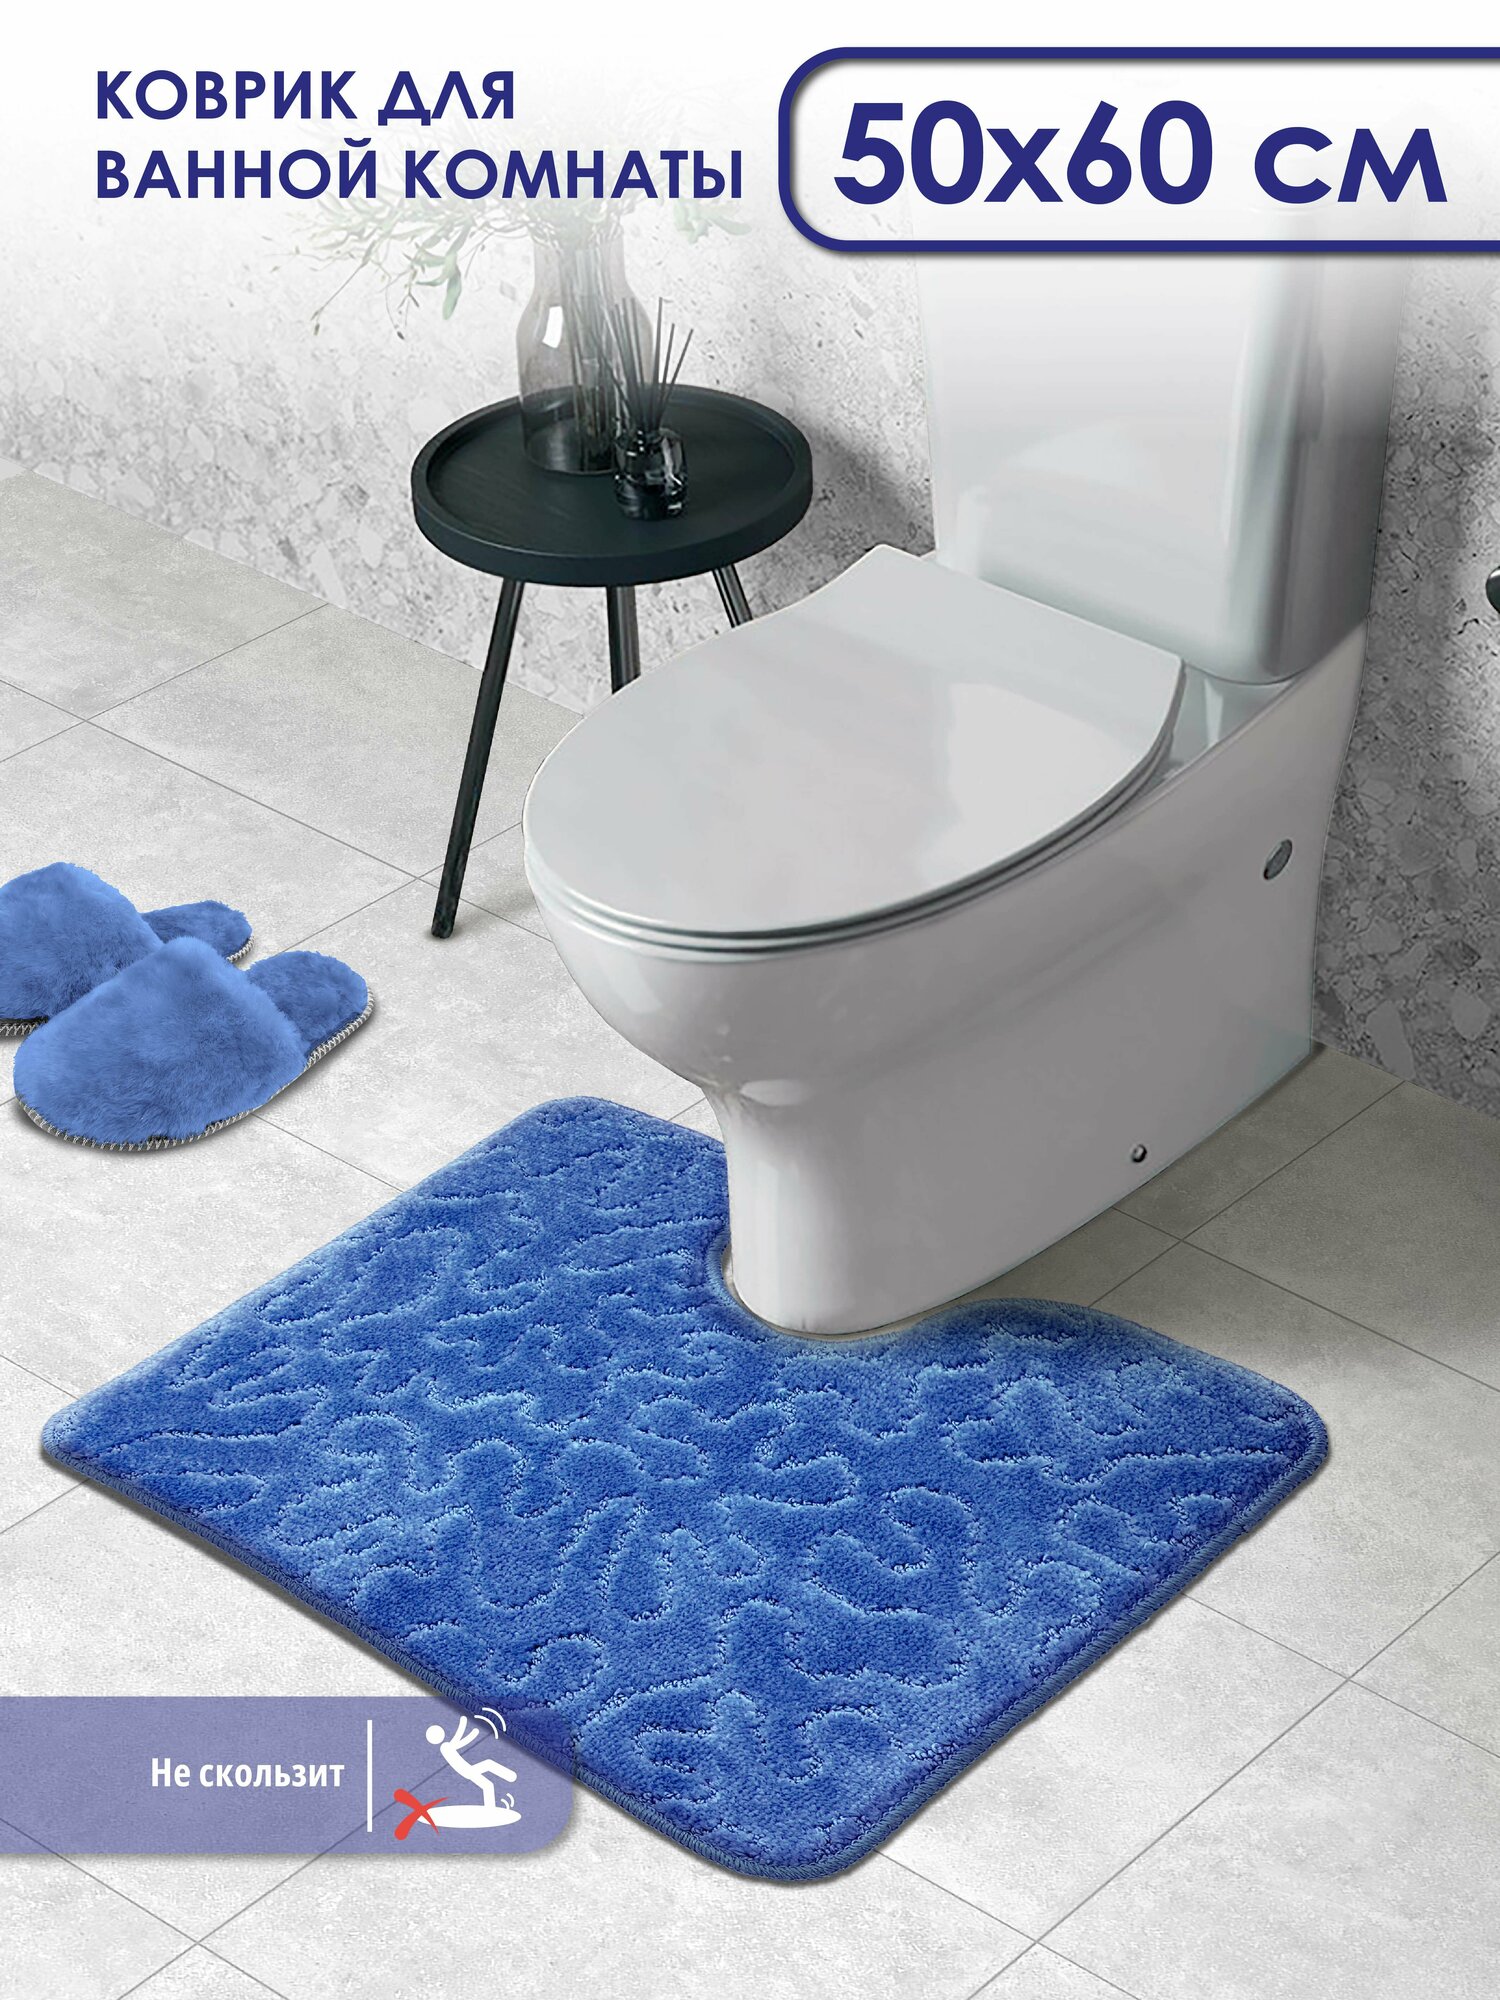 Коврик для ванной и туалета SHAHINTEX PP противоскользящий 50х60 003 синий 56, коврик для туалета с вырезом